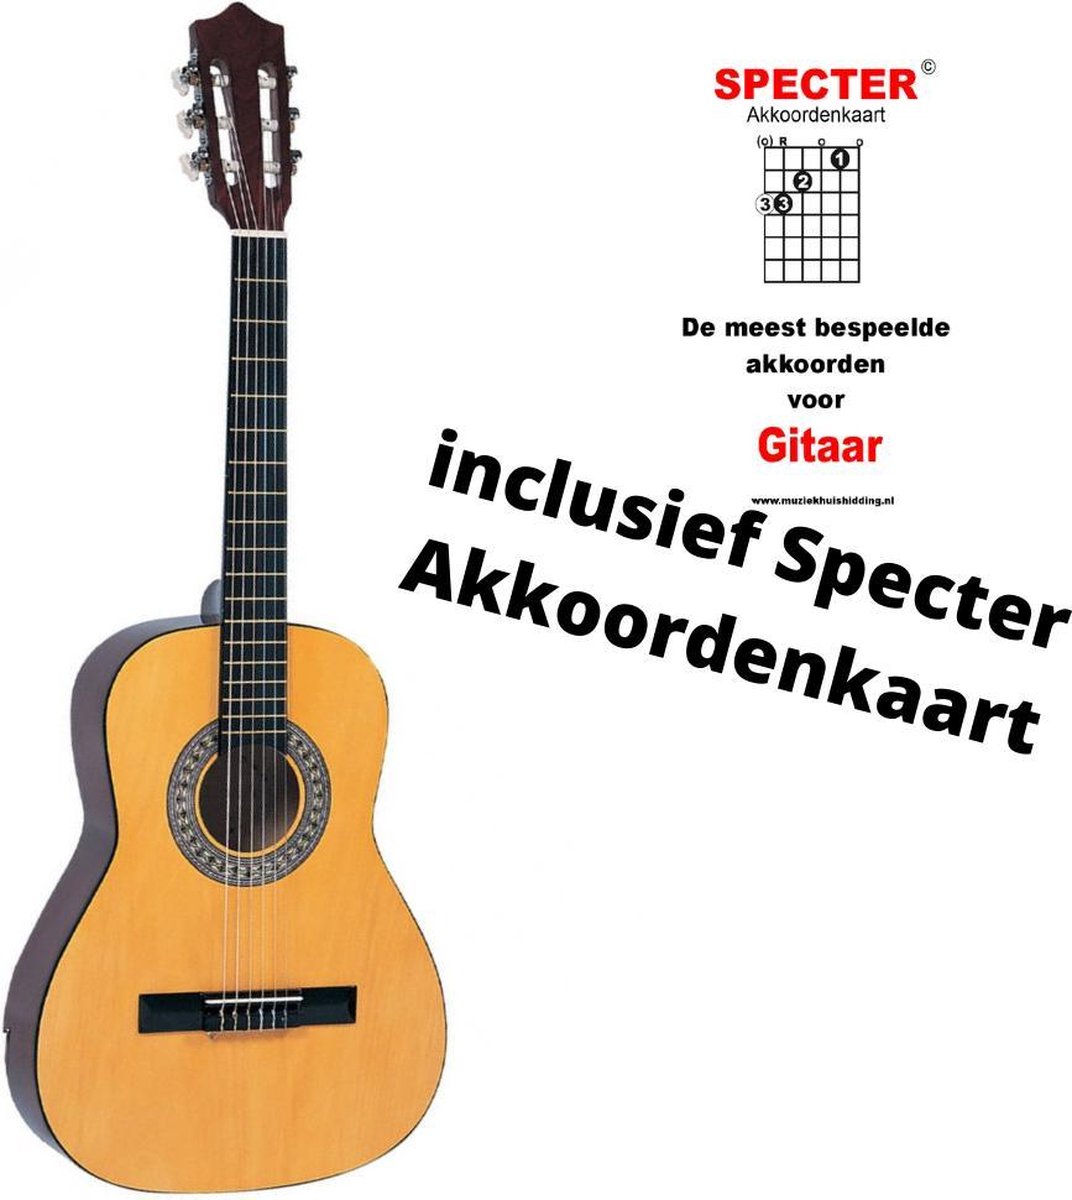 Encore Klassieke Gitaar 3/4 Met Specter Akkoordenkaart